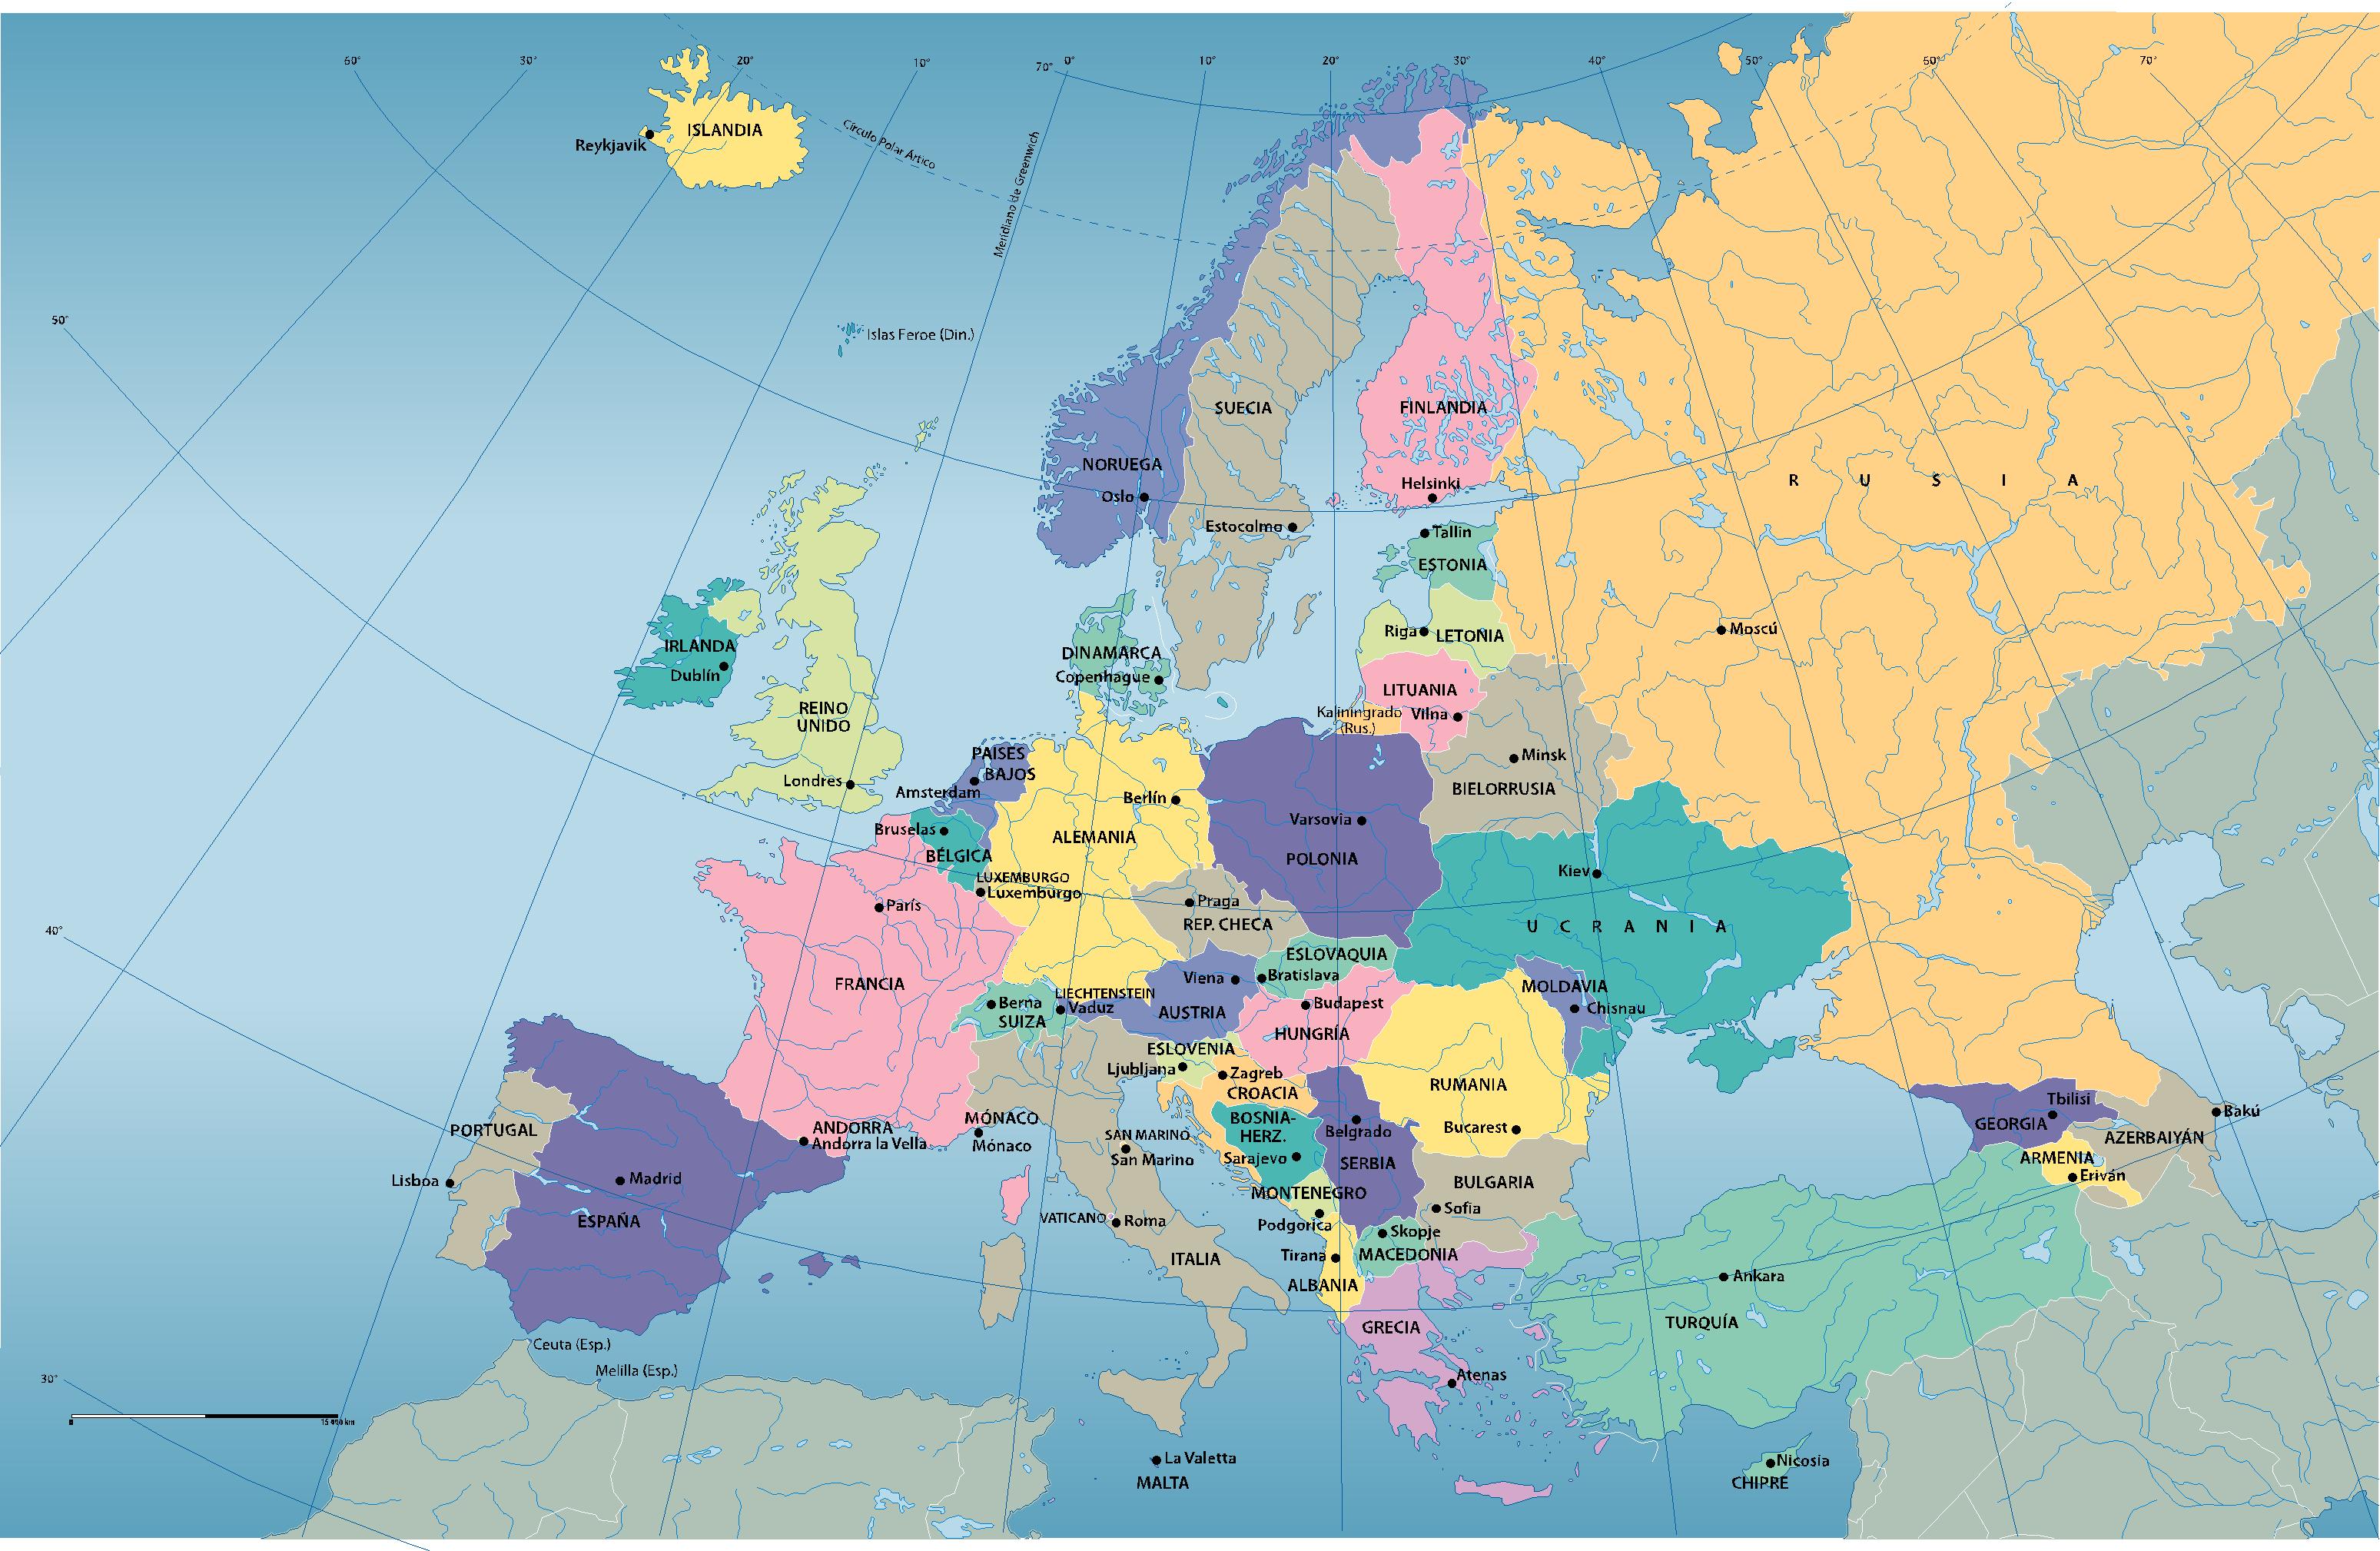 otro mapa politico de europa